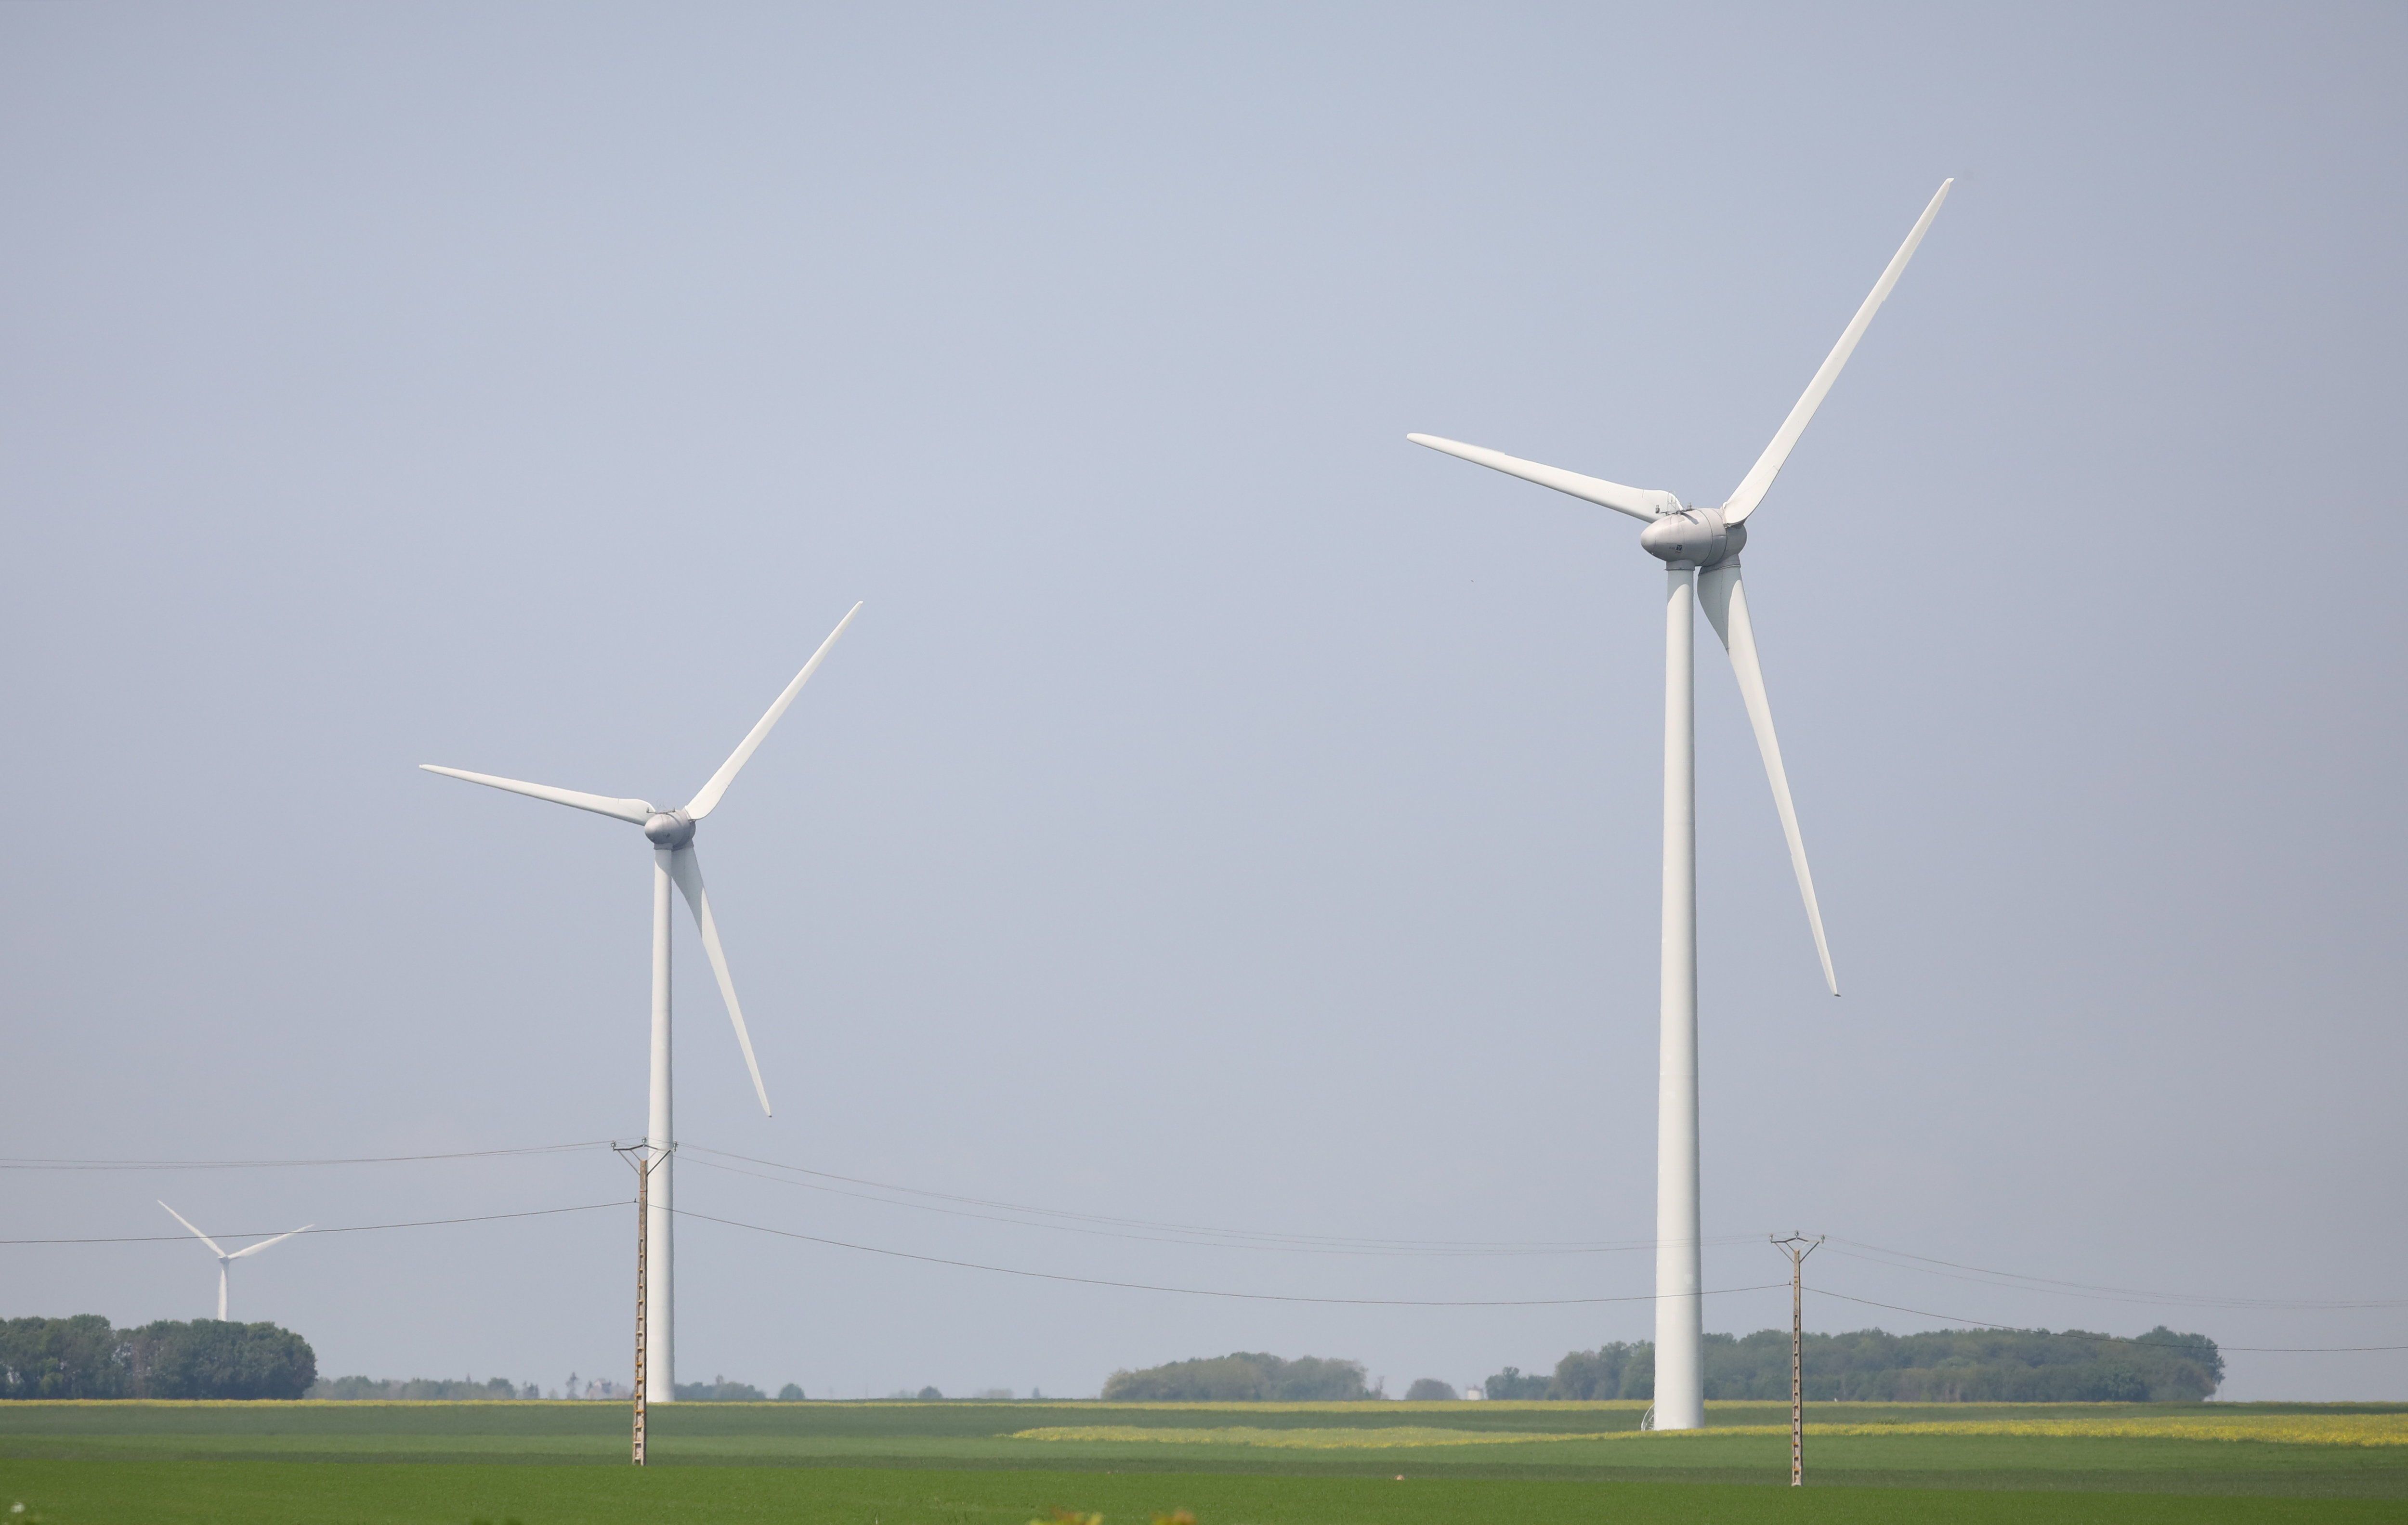 Le département de l’Essonne compte 18 éoliennes : neuf à Angerville, trois à Pussay et six à Boissy-la-Rivière. LP/Arnaud Journois